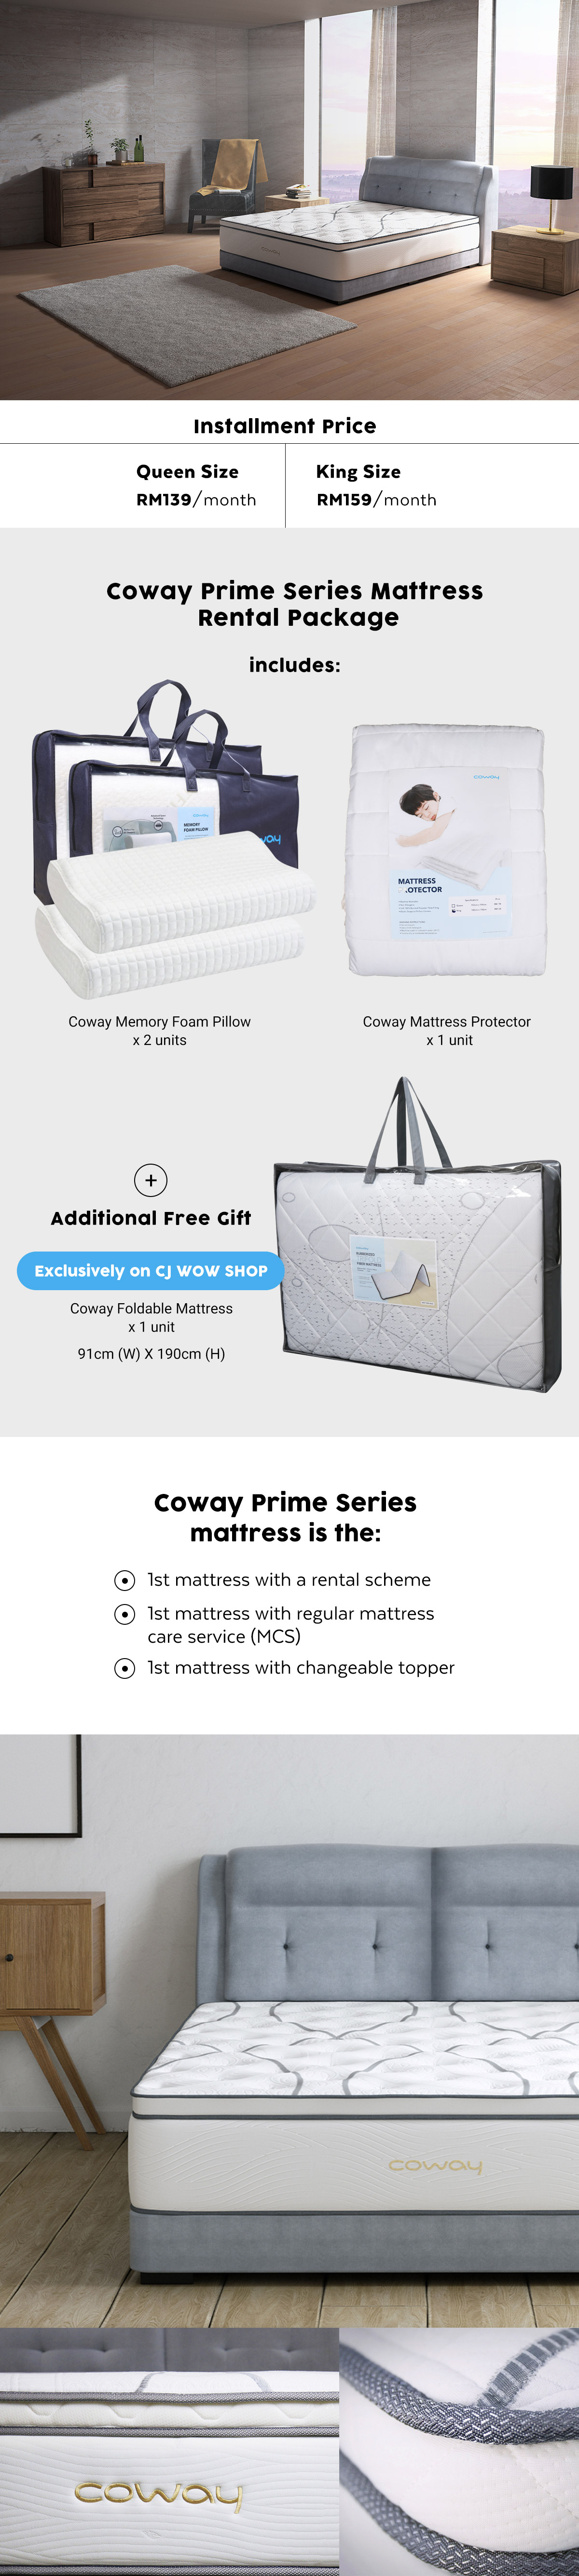 Coway mattress